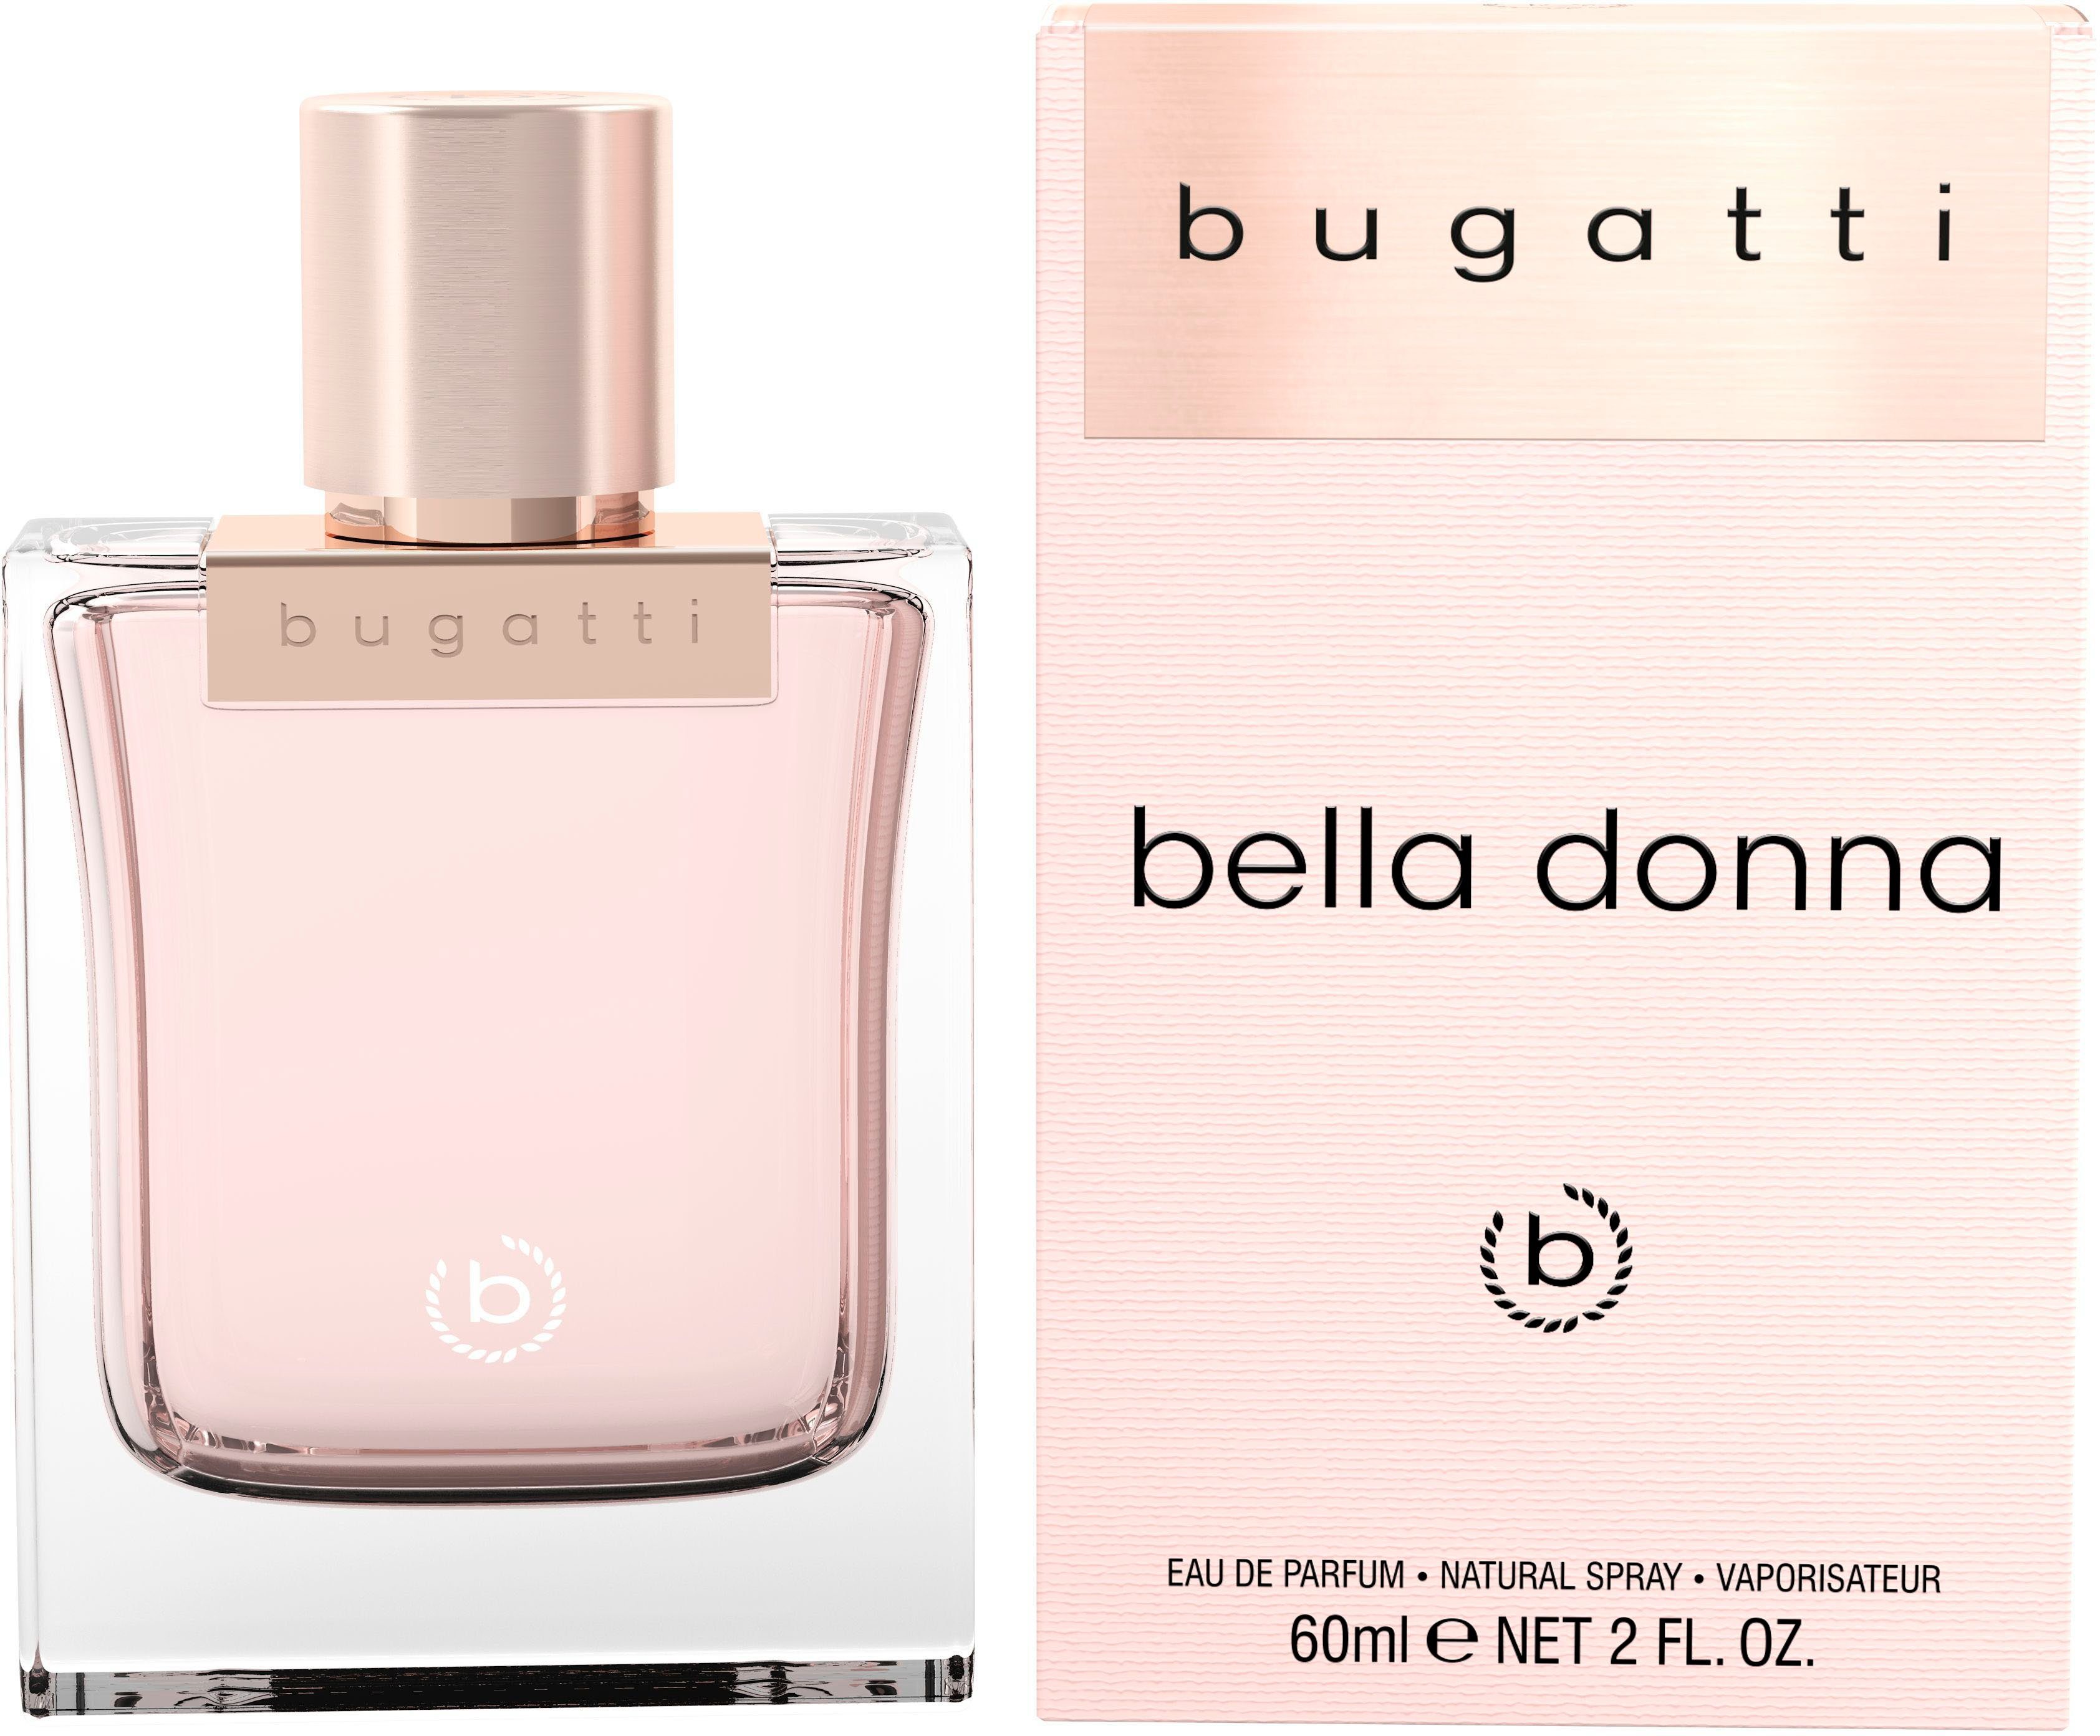 bugatti Eau de Parfum Bella Donna EdP 60 ml | Eau de Parfum